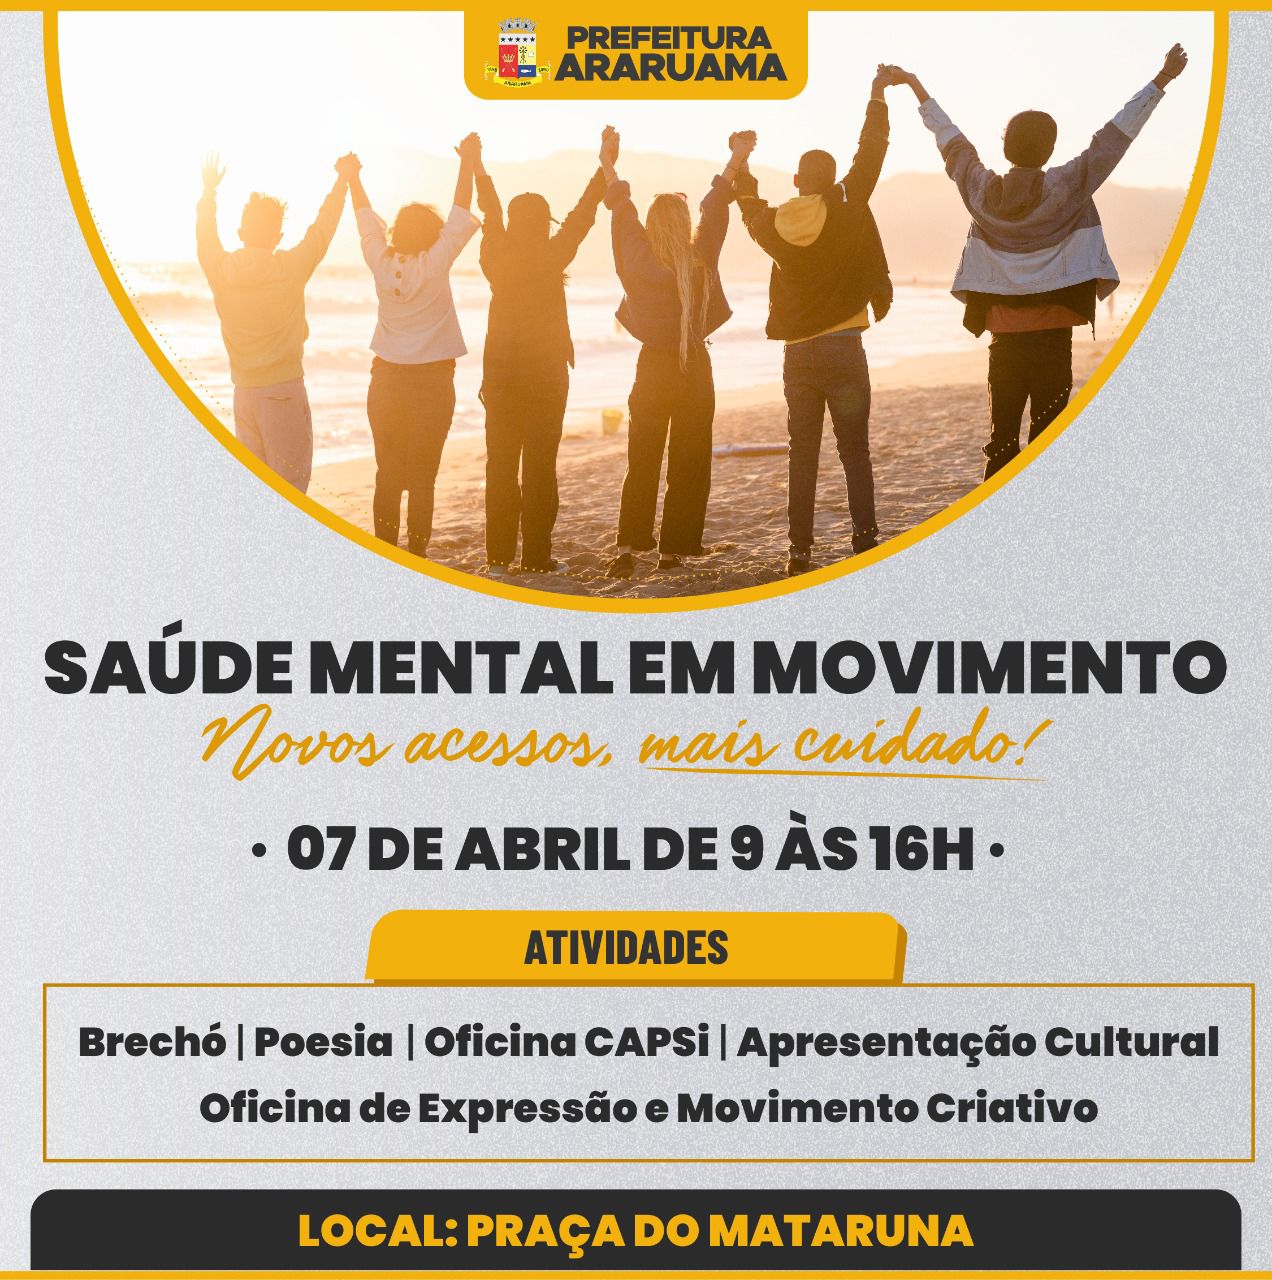 Centro de Atenção Psicossocial de Araruama vai realizar o projeto “Saúde Mental em Movimento” na Praça do Mataruna